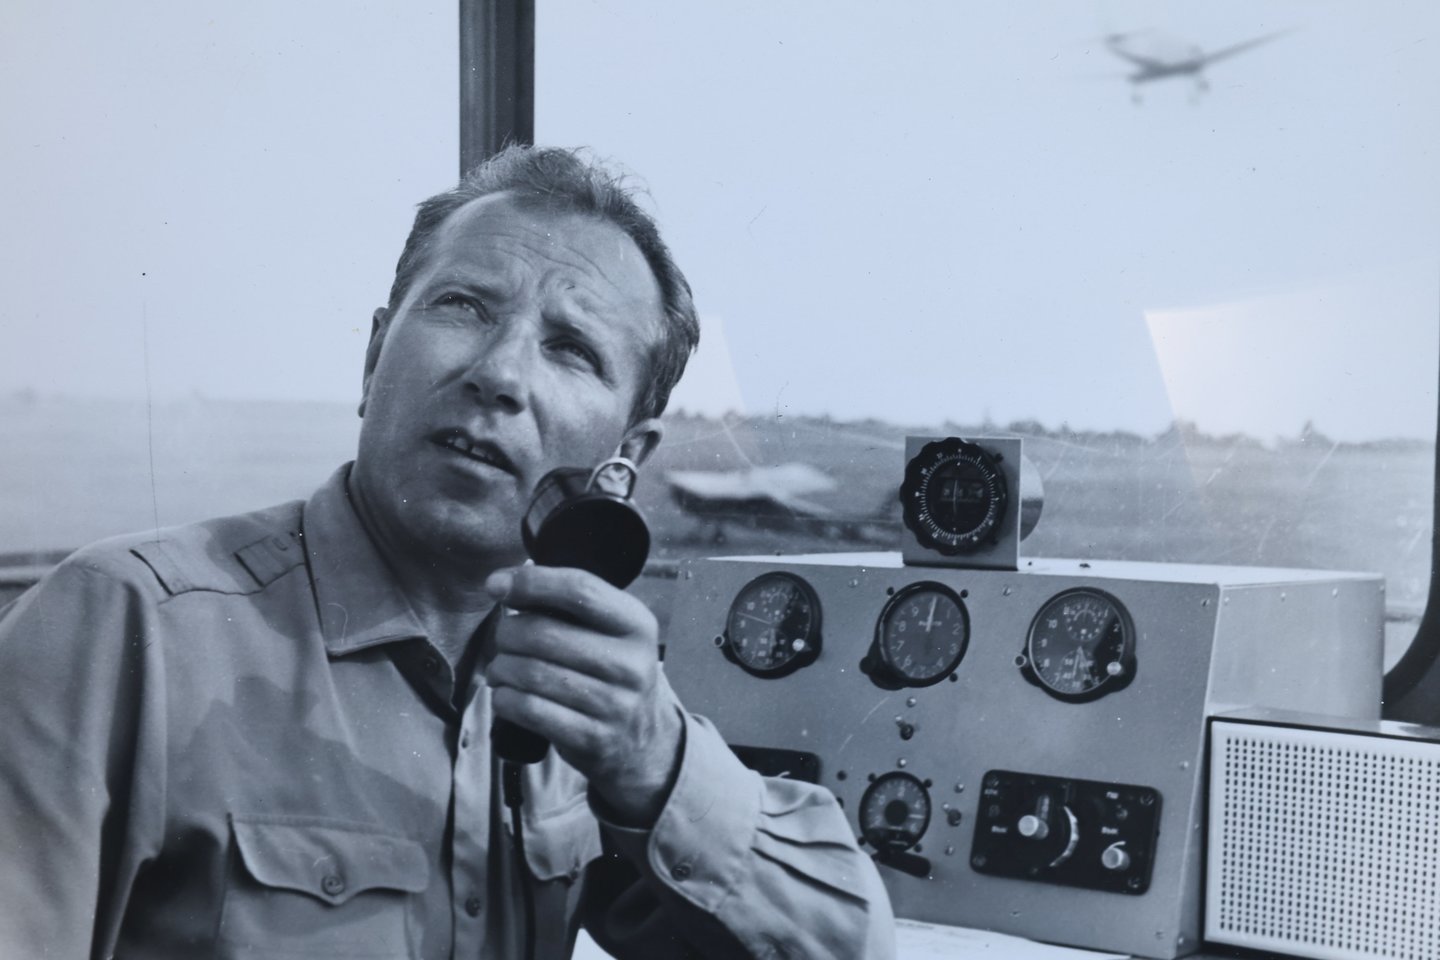  Vilniaus aeroklubo viršininkas Z.Polinauskas įamžintas 1972 metais komandiniame punkte palaikantis ryšį su lėktuvais.<br> R.Danisevičiaus ir asmeninio archyvo nuotr. 